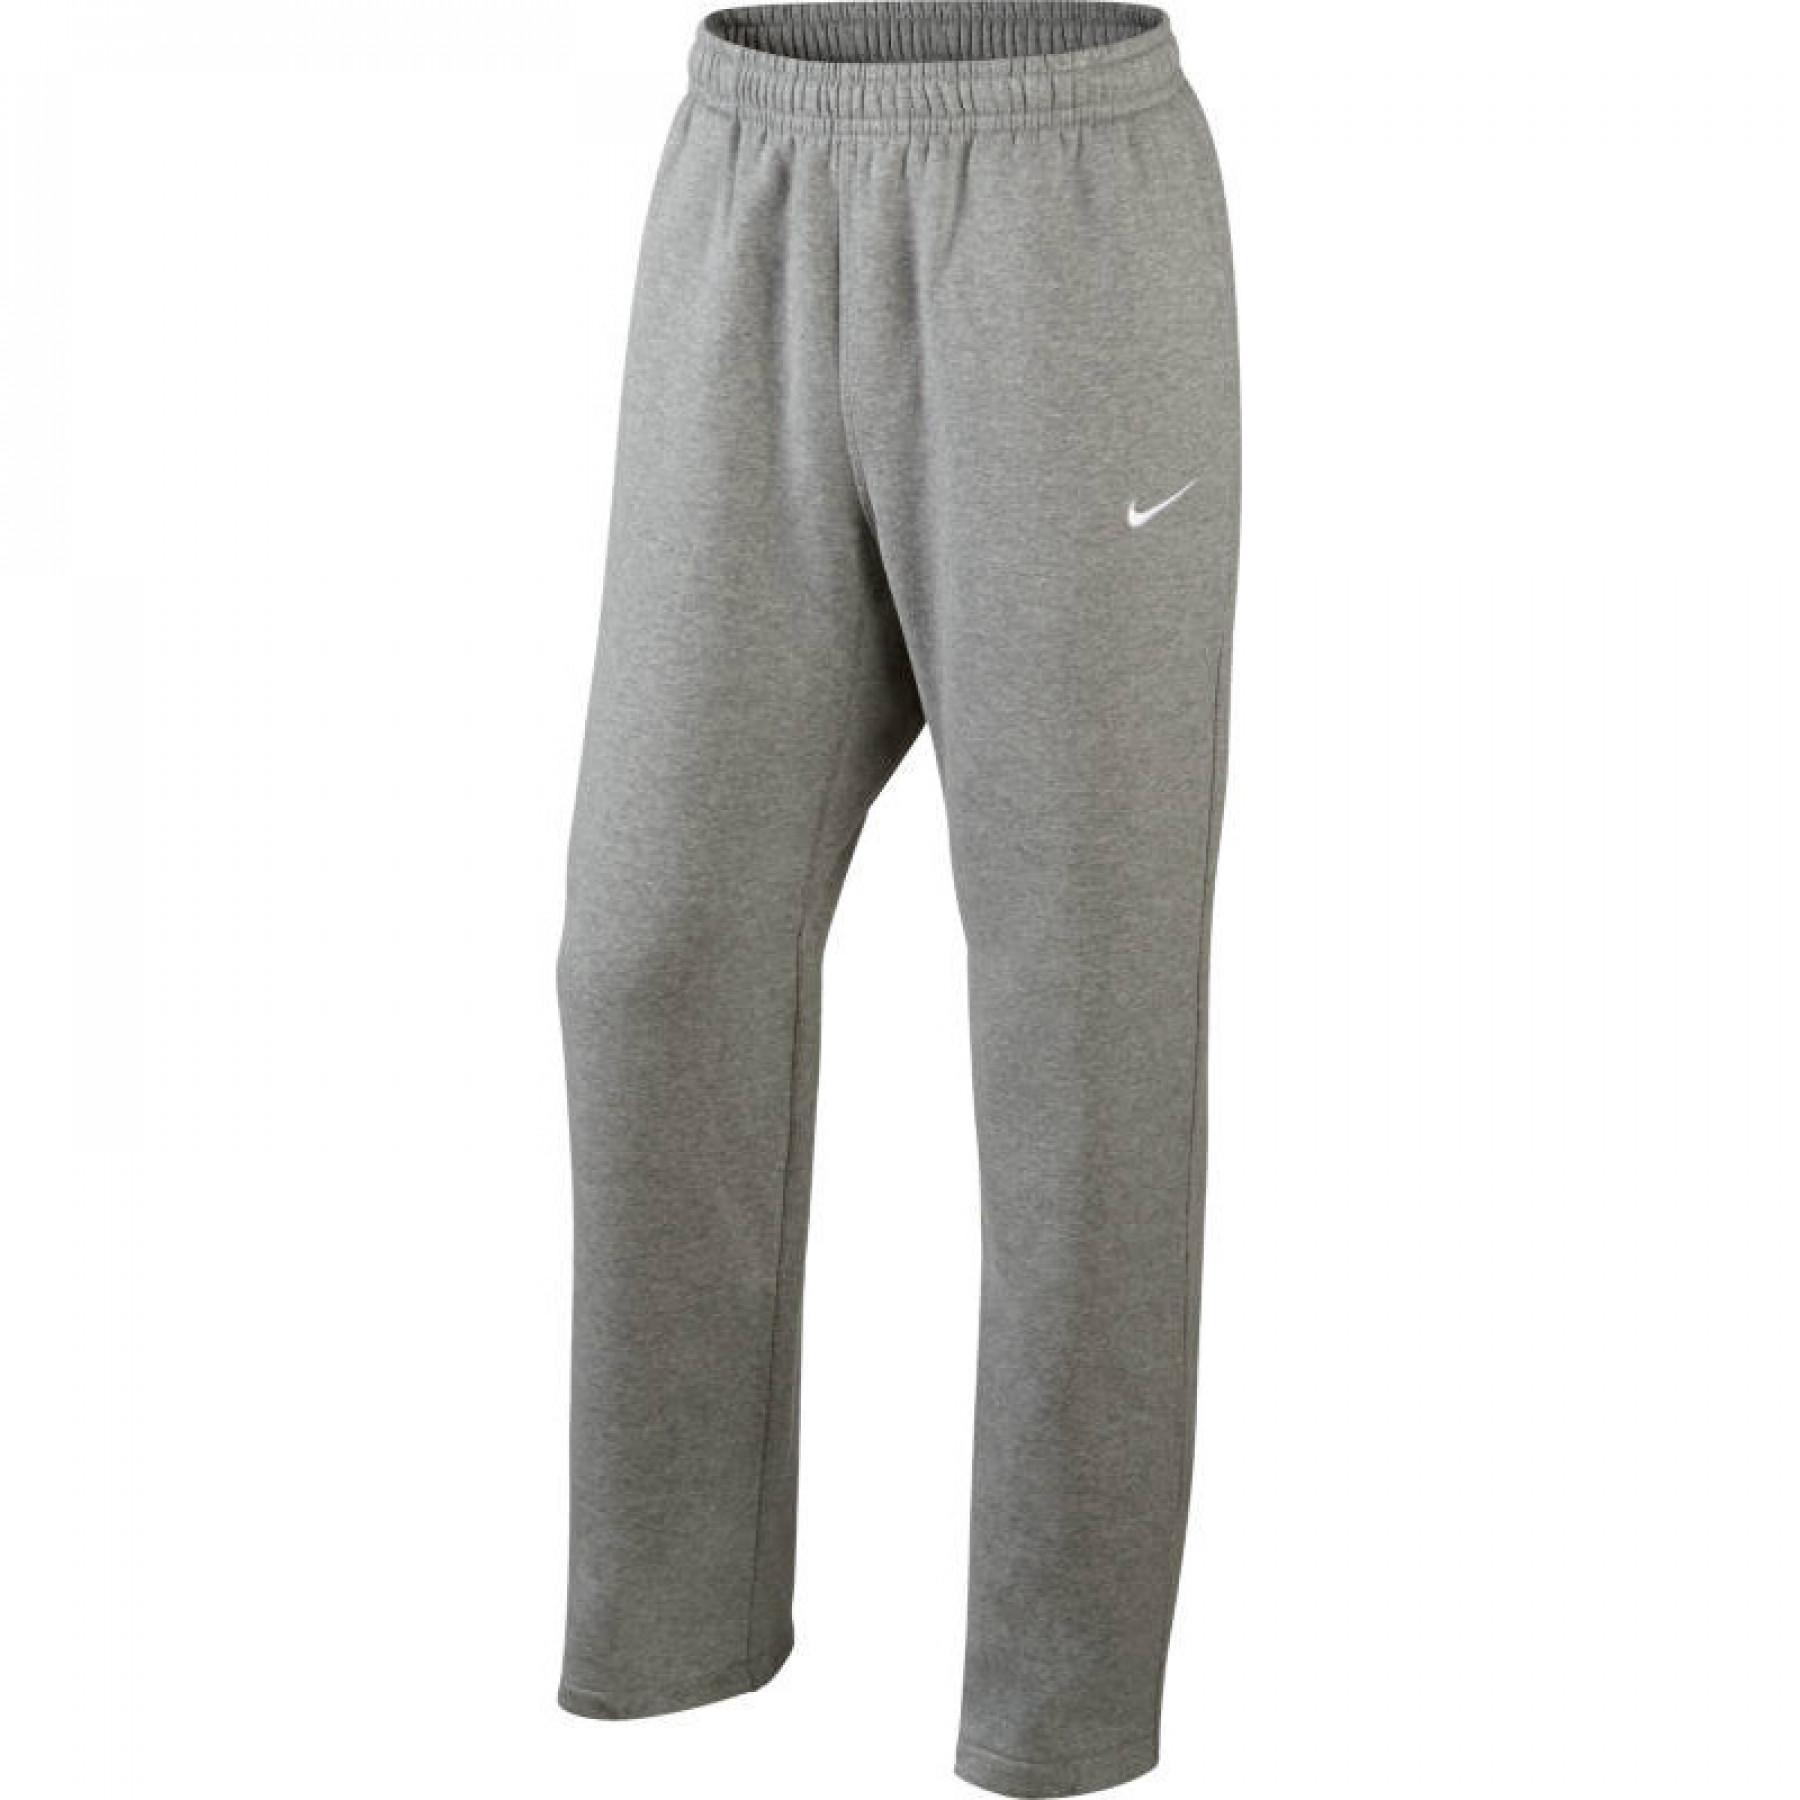 Spodnie Nike Team Club